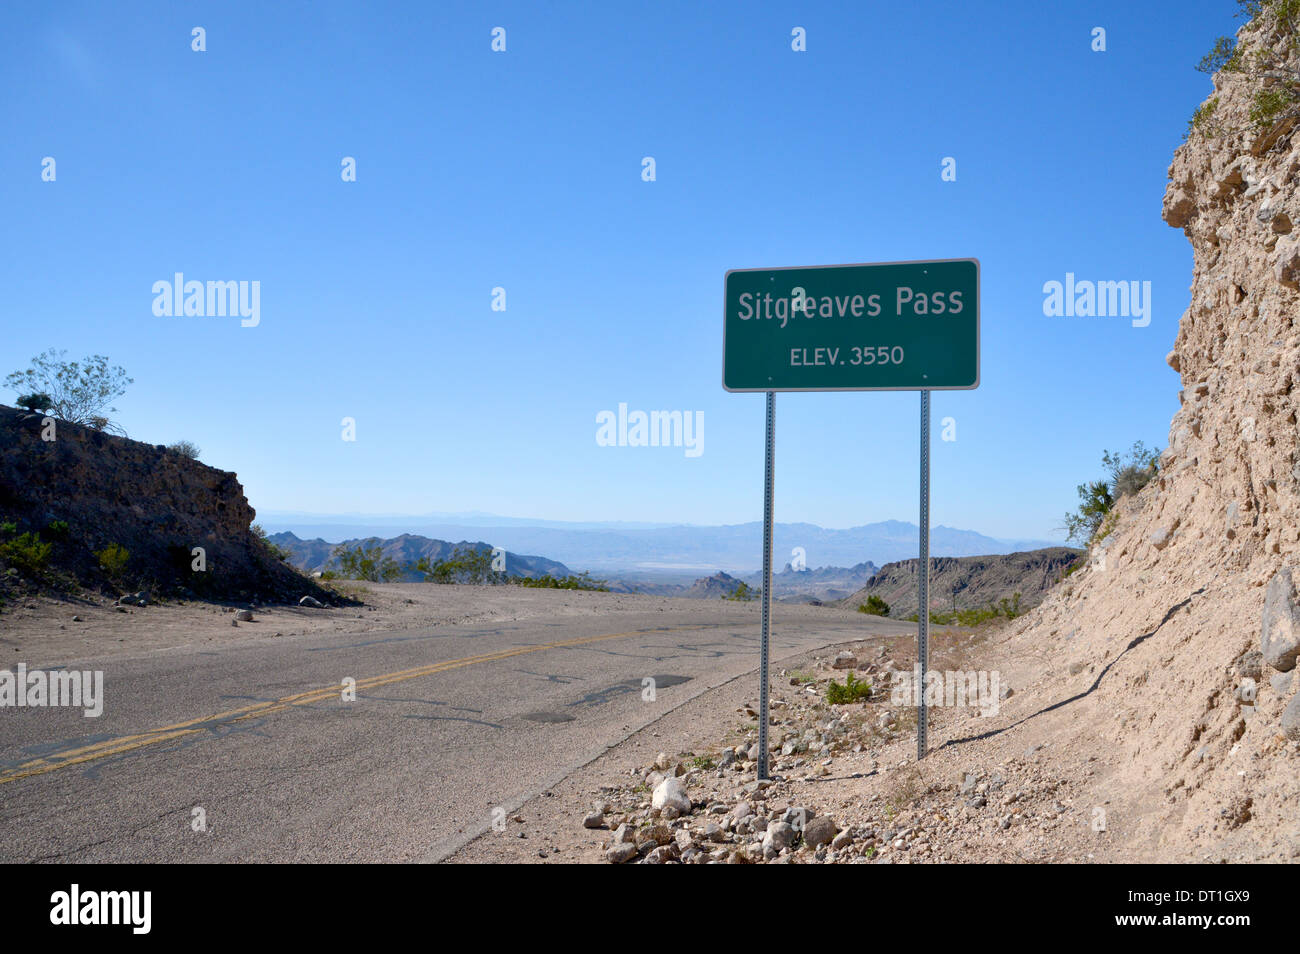 La Sitgreaves Pass, signe d'altitude élevée dans les montagnes près de Las Vegas, le long de la vieille route 66 en Arizona Banque D'Images